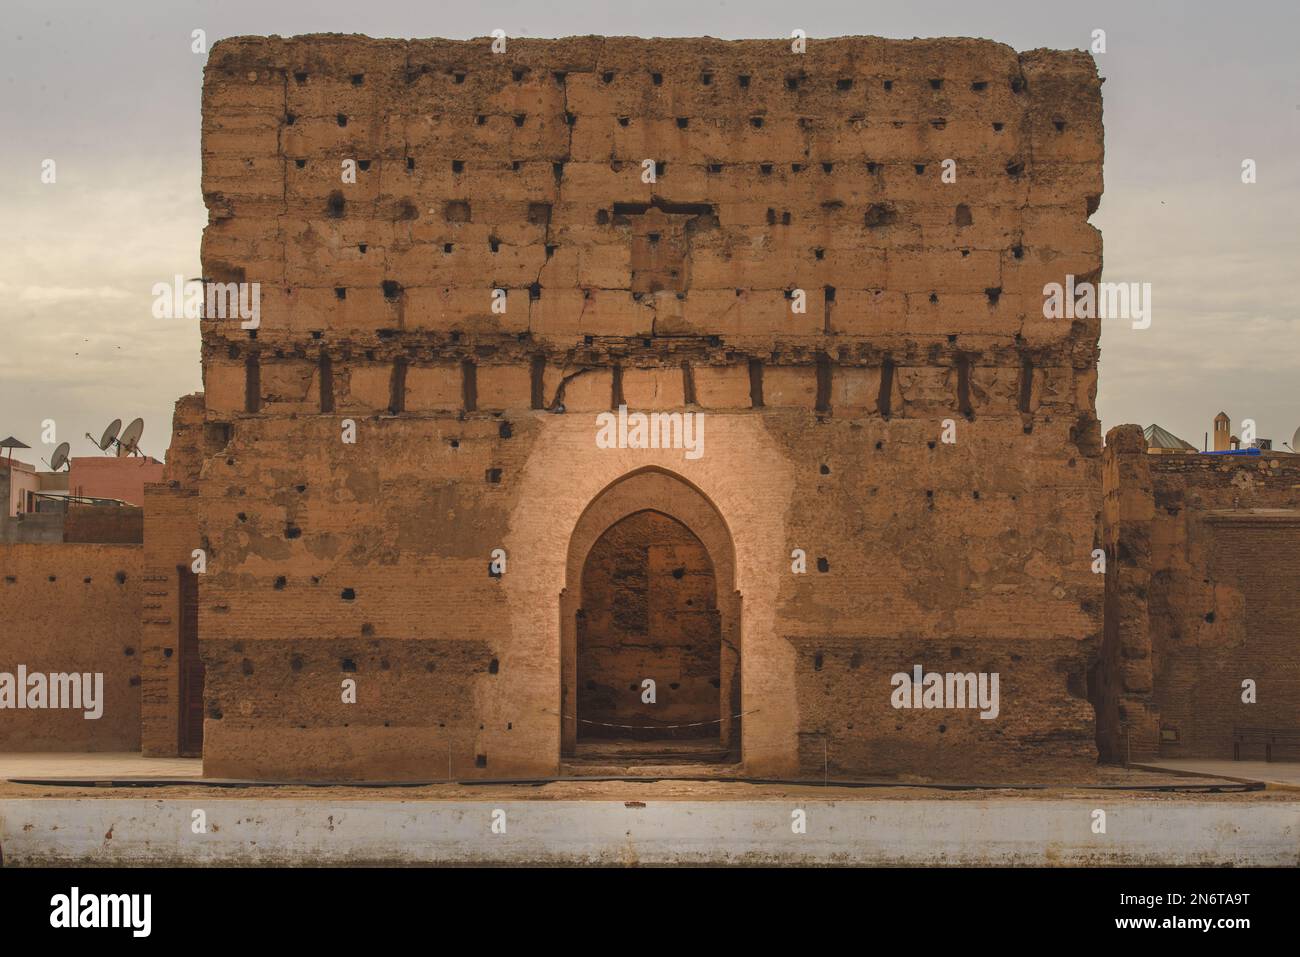 L'architettura rocciosa di Marrakech, Marocco, è una testimonianza del ricco patrimonio culturale e dell'eccellenza artistica della città. Foto Stock